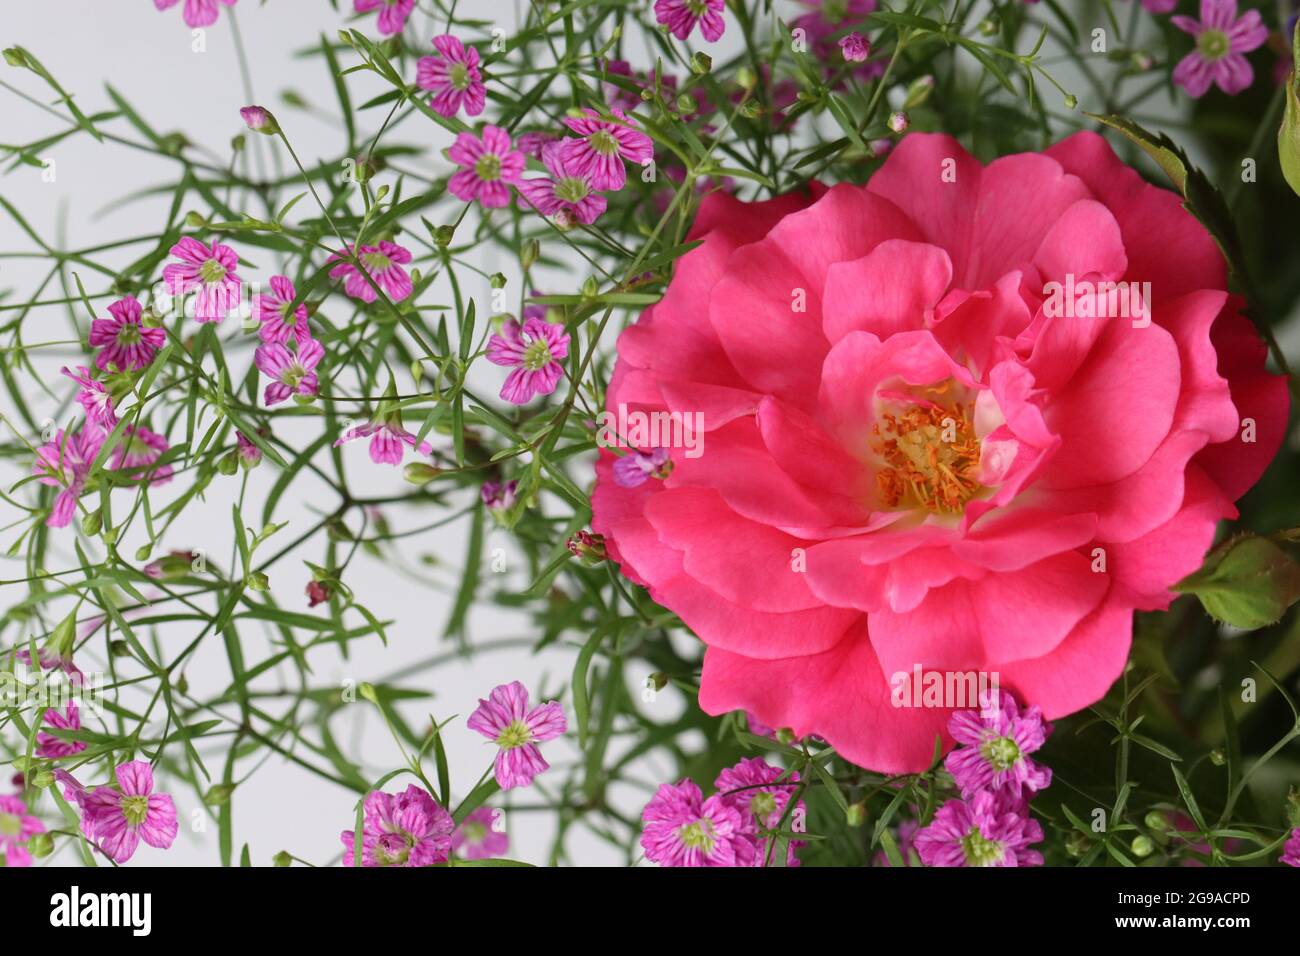 una flor rosada y una gitana rosada está acostada sobre fondo blanco Foto de stock